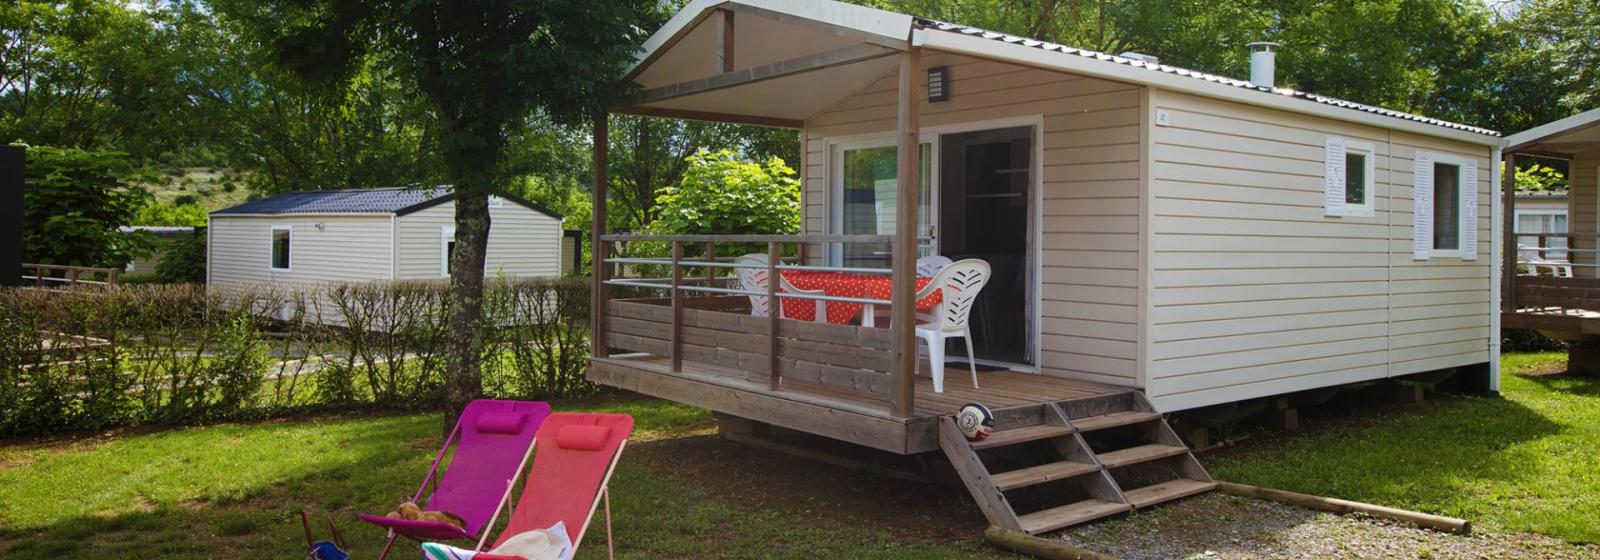 Huuraccommodatie - Stacaravan Cottage Zondag - Camping Bel Air